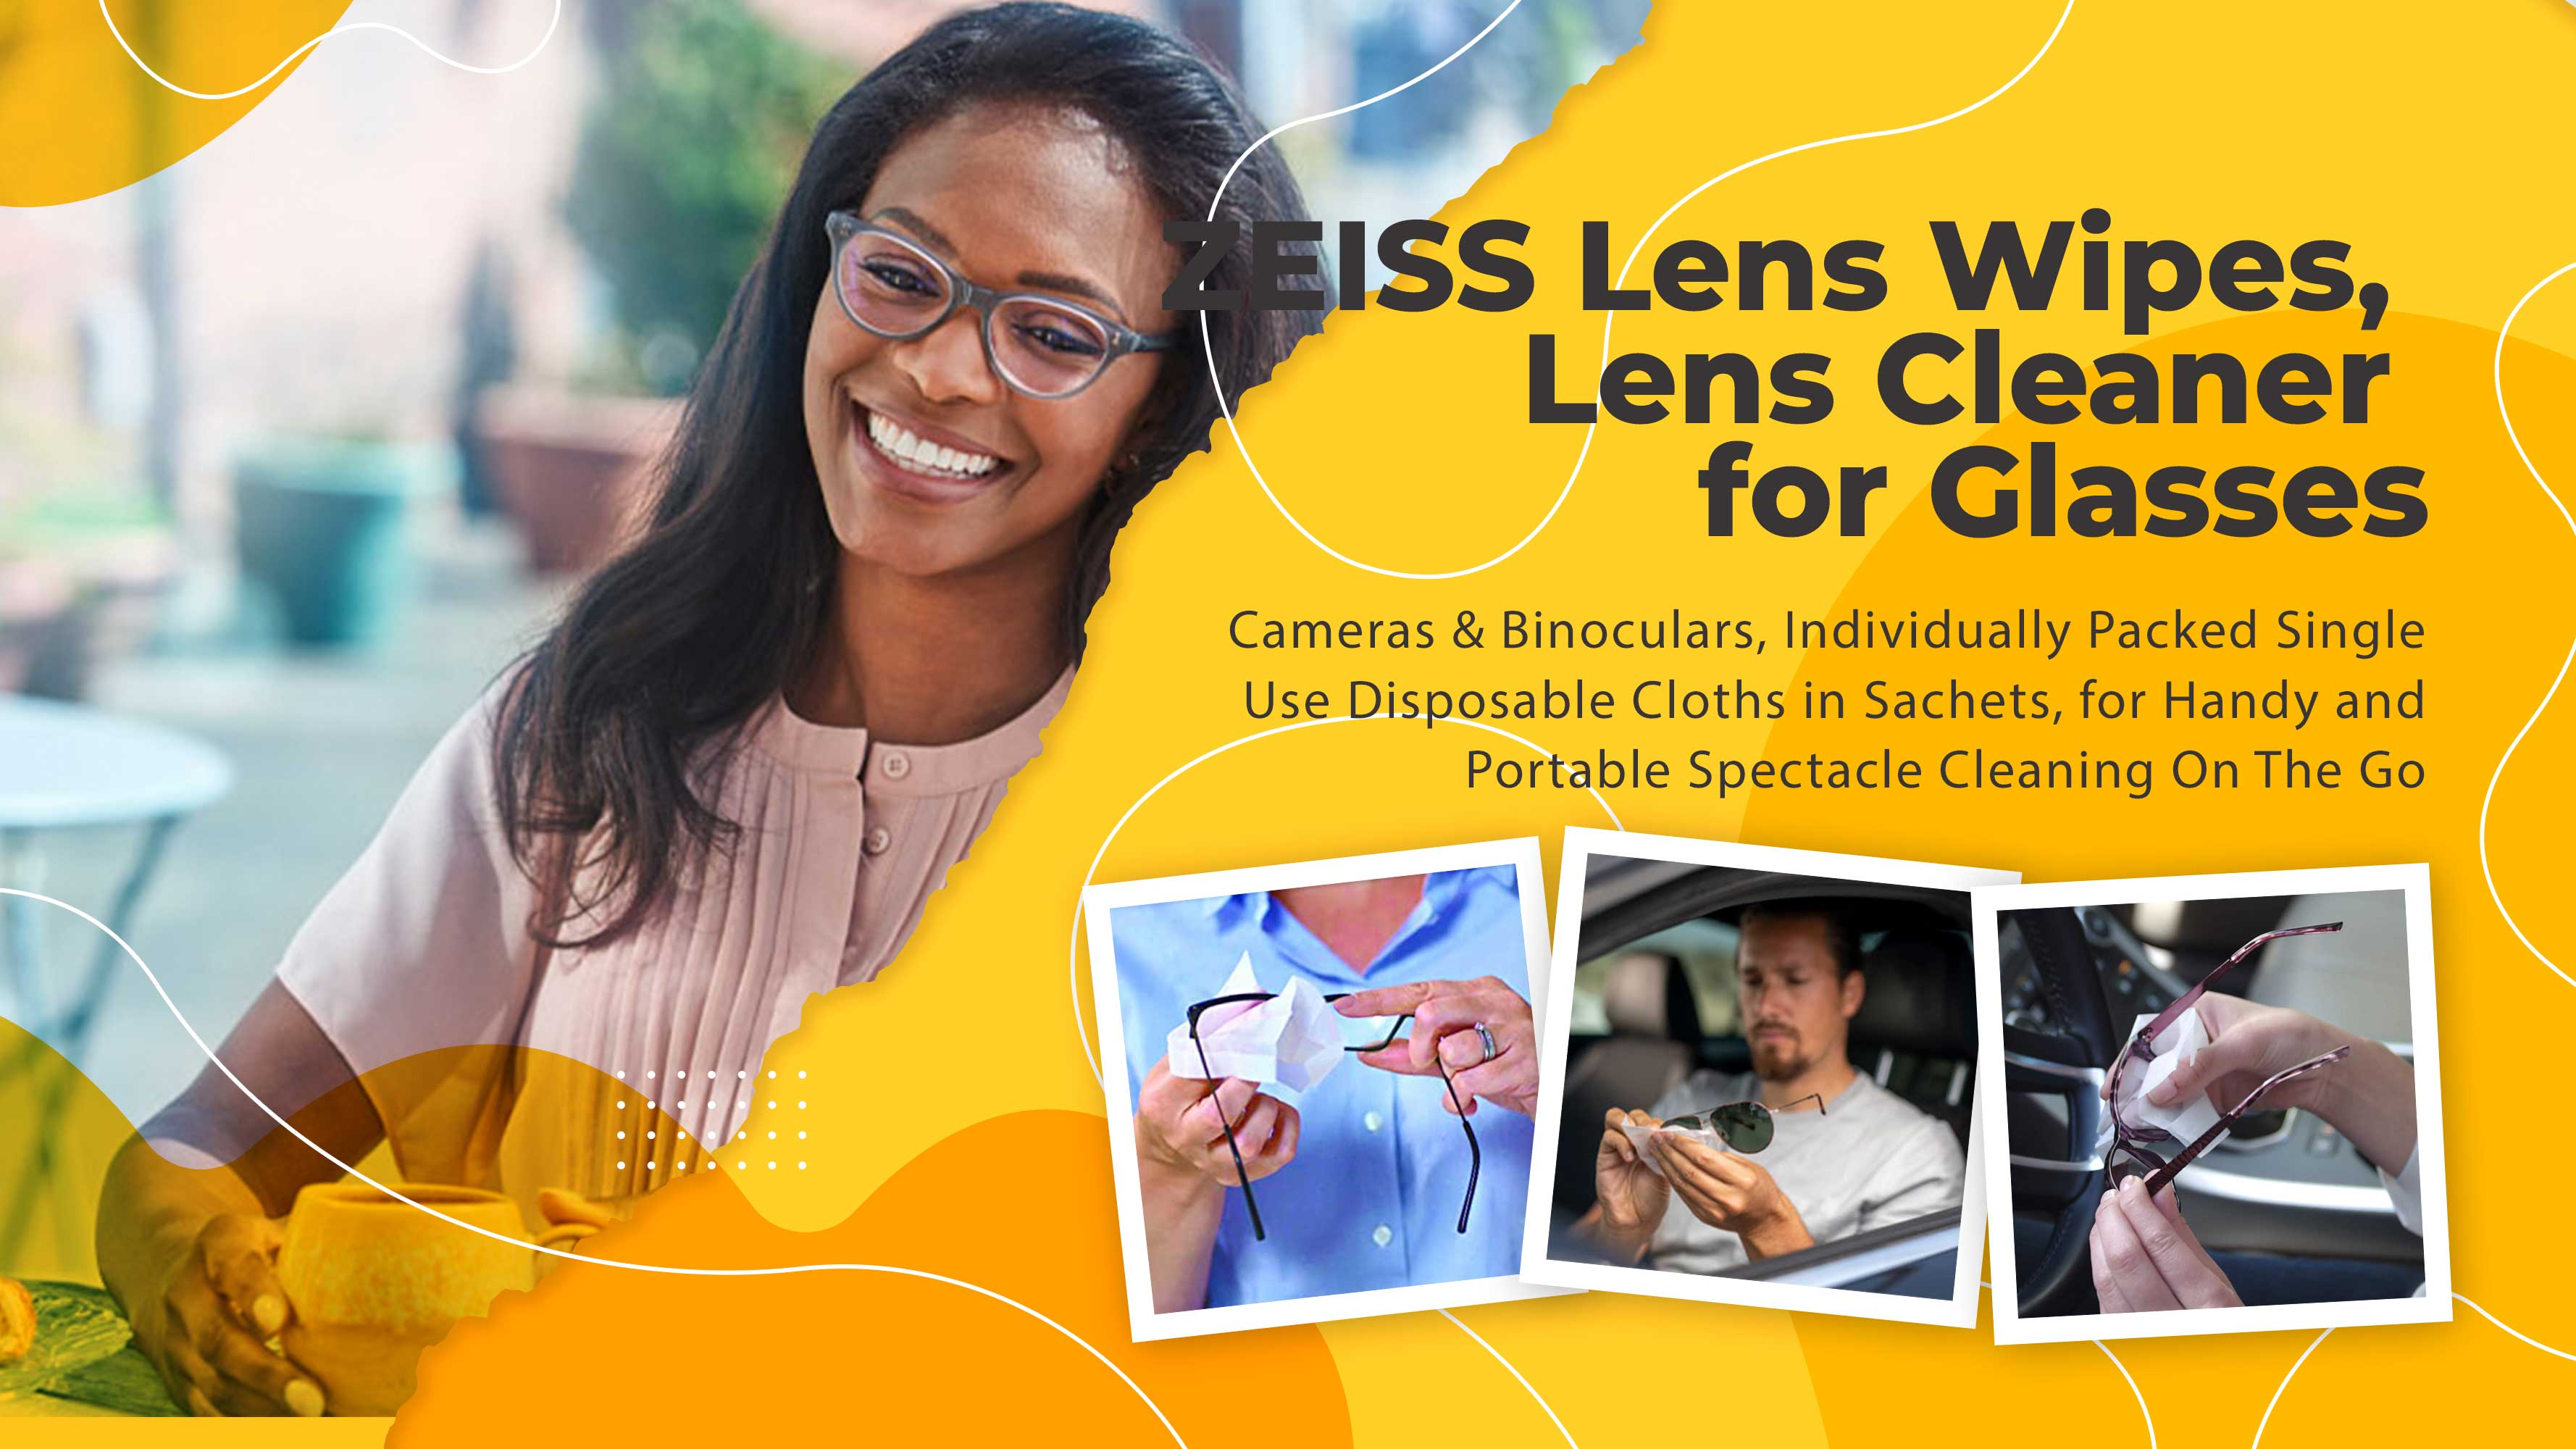 ZEISS-Lens-Wipes-Lens-Cleaner-for-Glasses.jpg?1668031174877